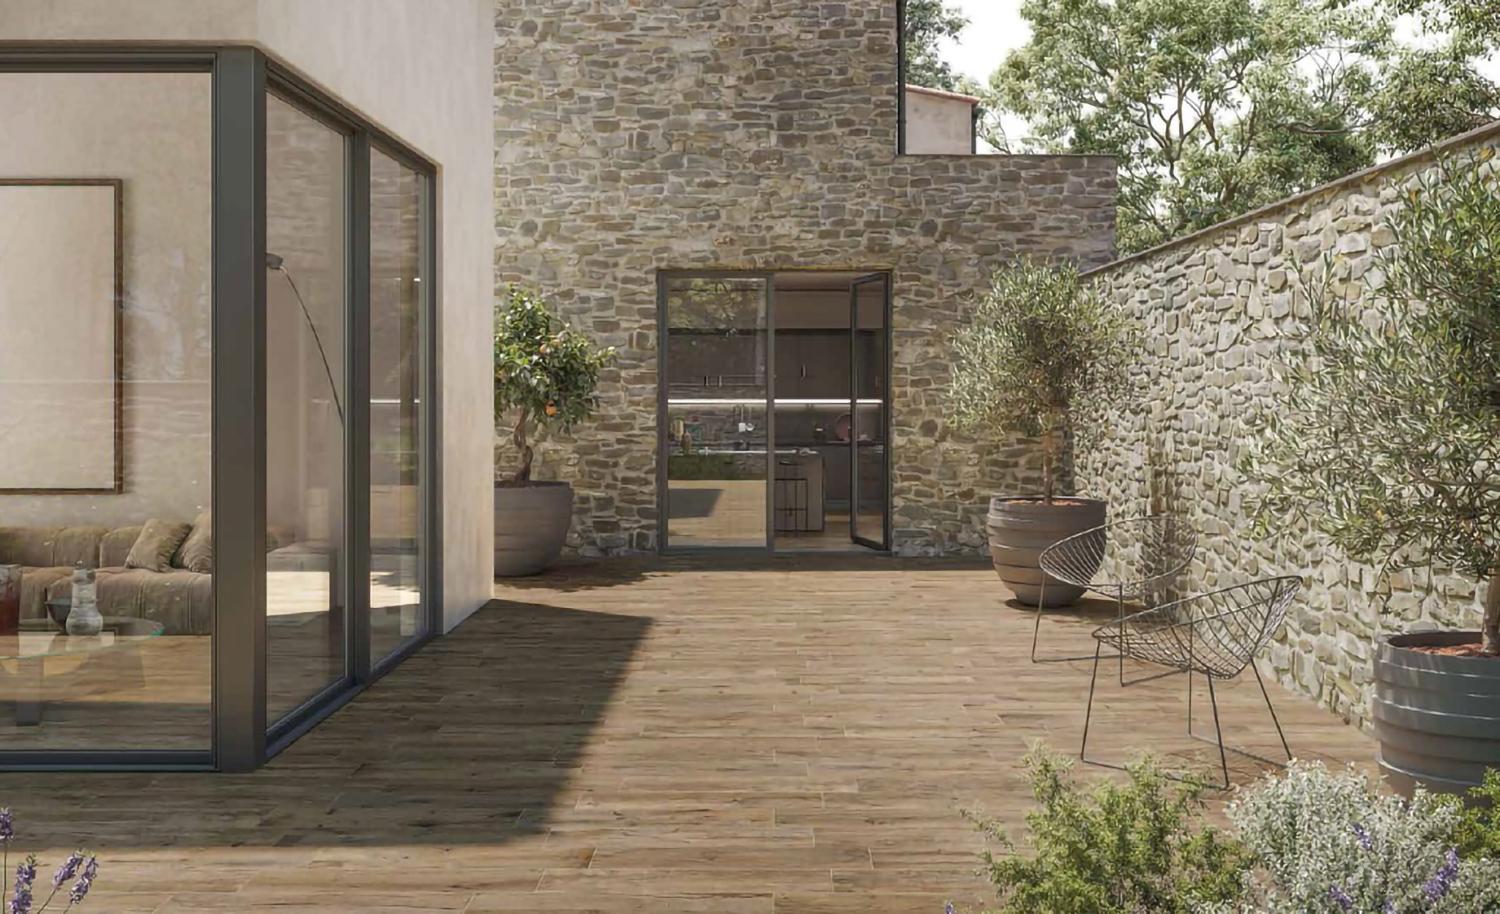 Terrasse ou patio, le carrelage imitation bois est le trait d'union entre l'authenticité des murs de pierre et la modernité de l'agrandissement.